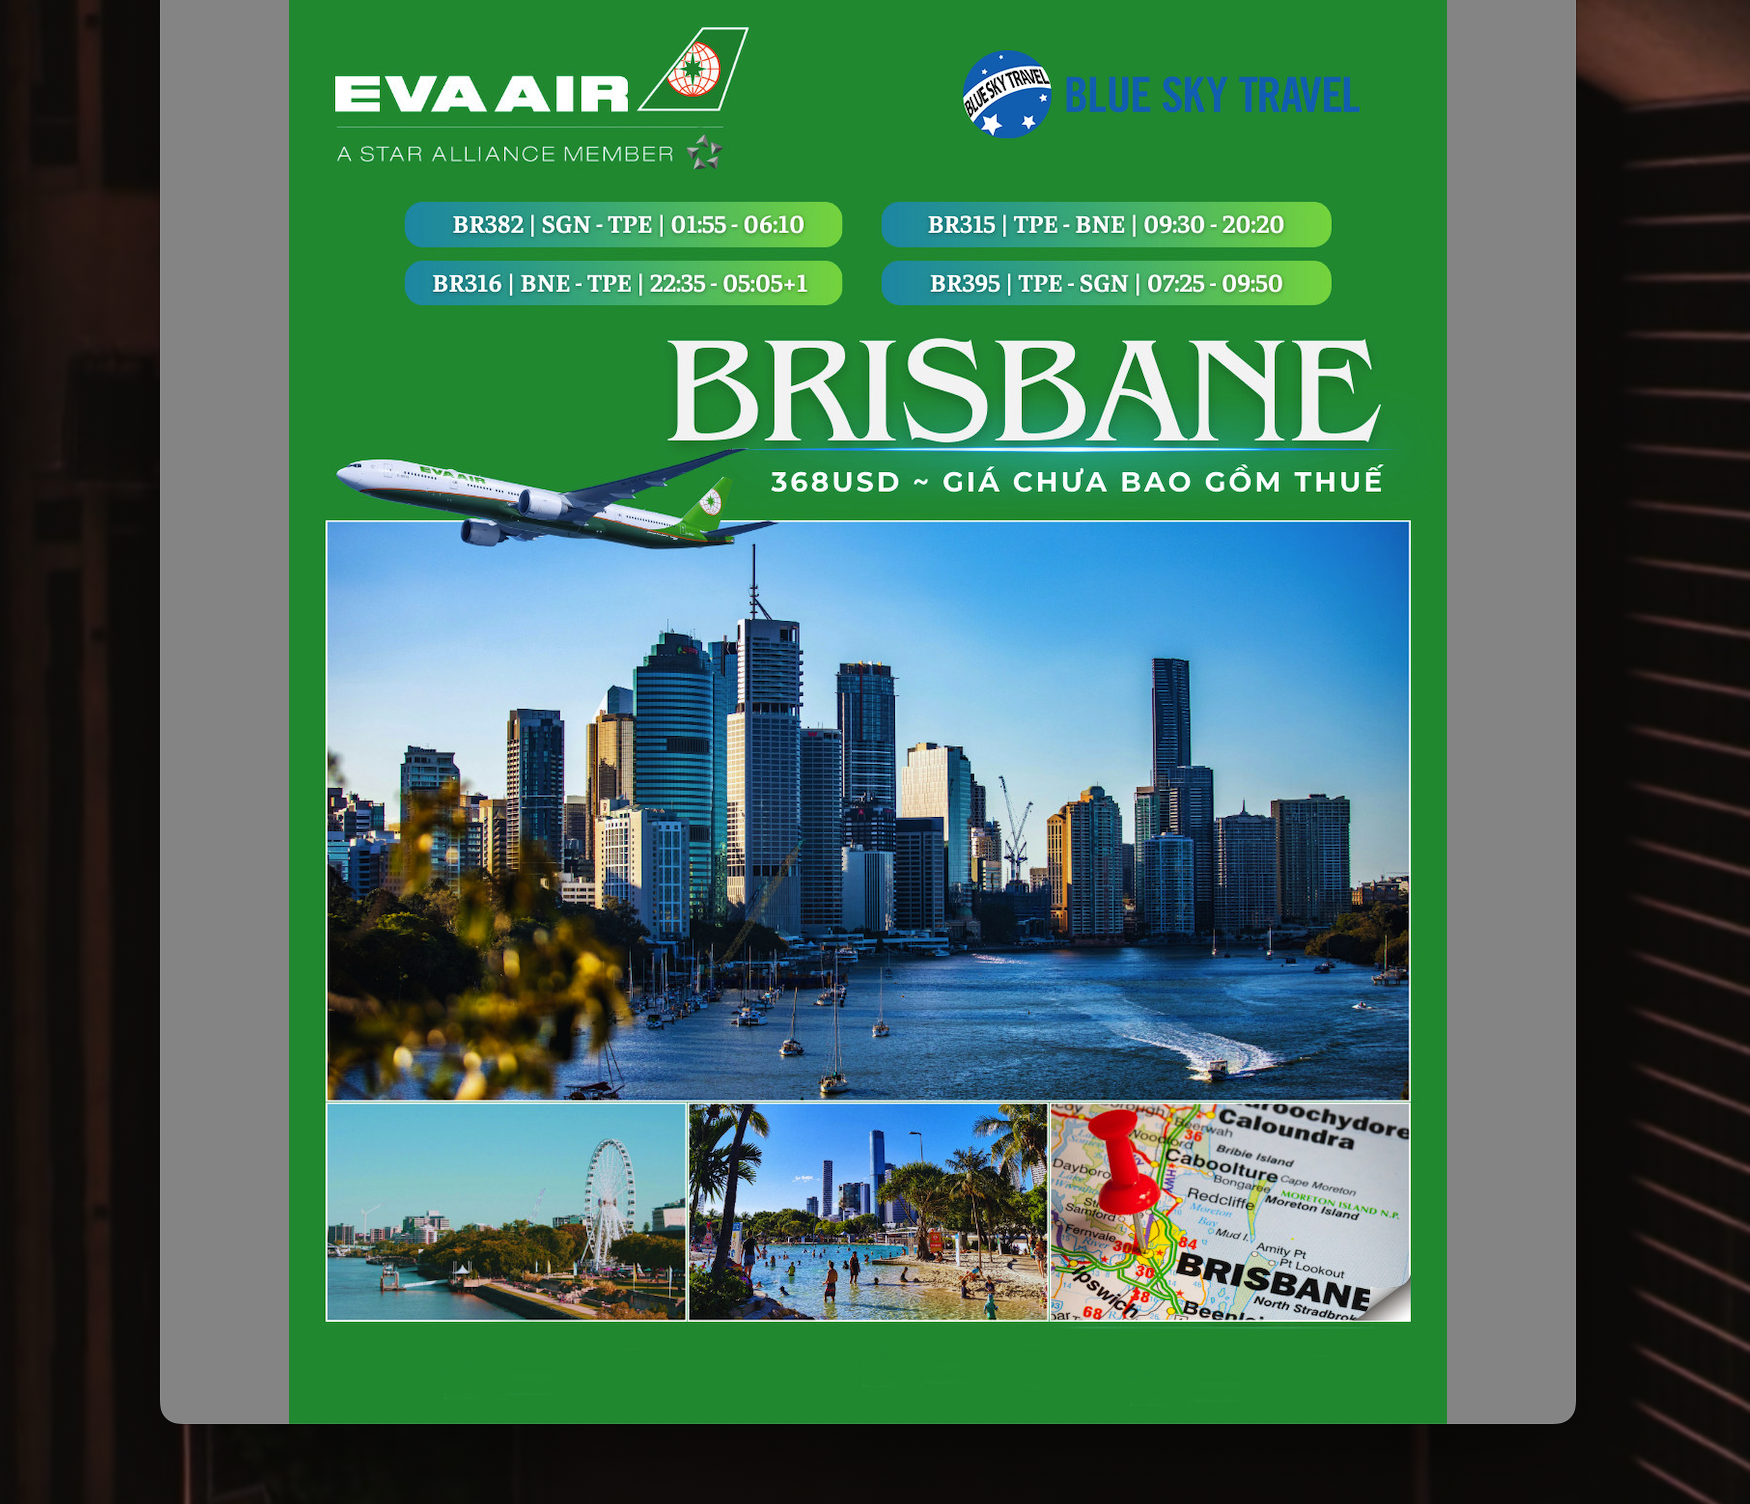 Tận hưởng dịch vụ bay Brisbane 5 sao đẳng cấp cùng EVA AIR.